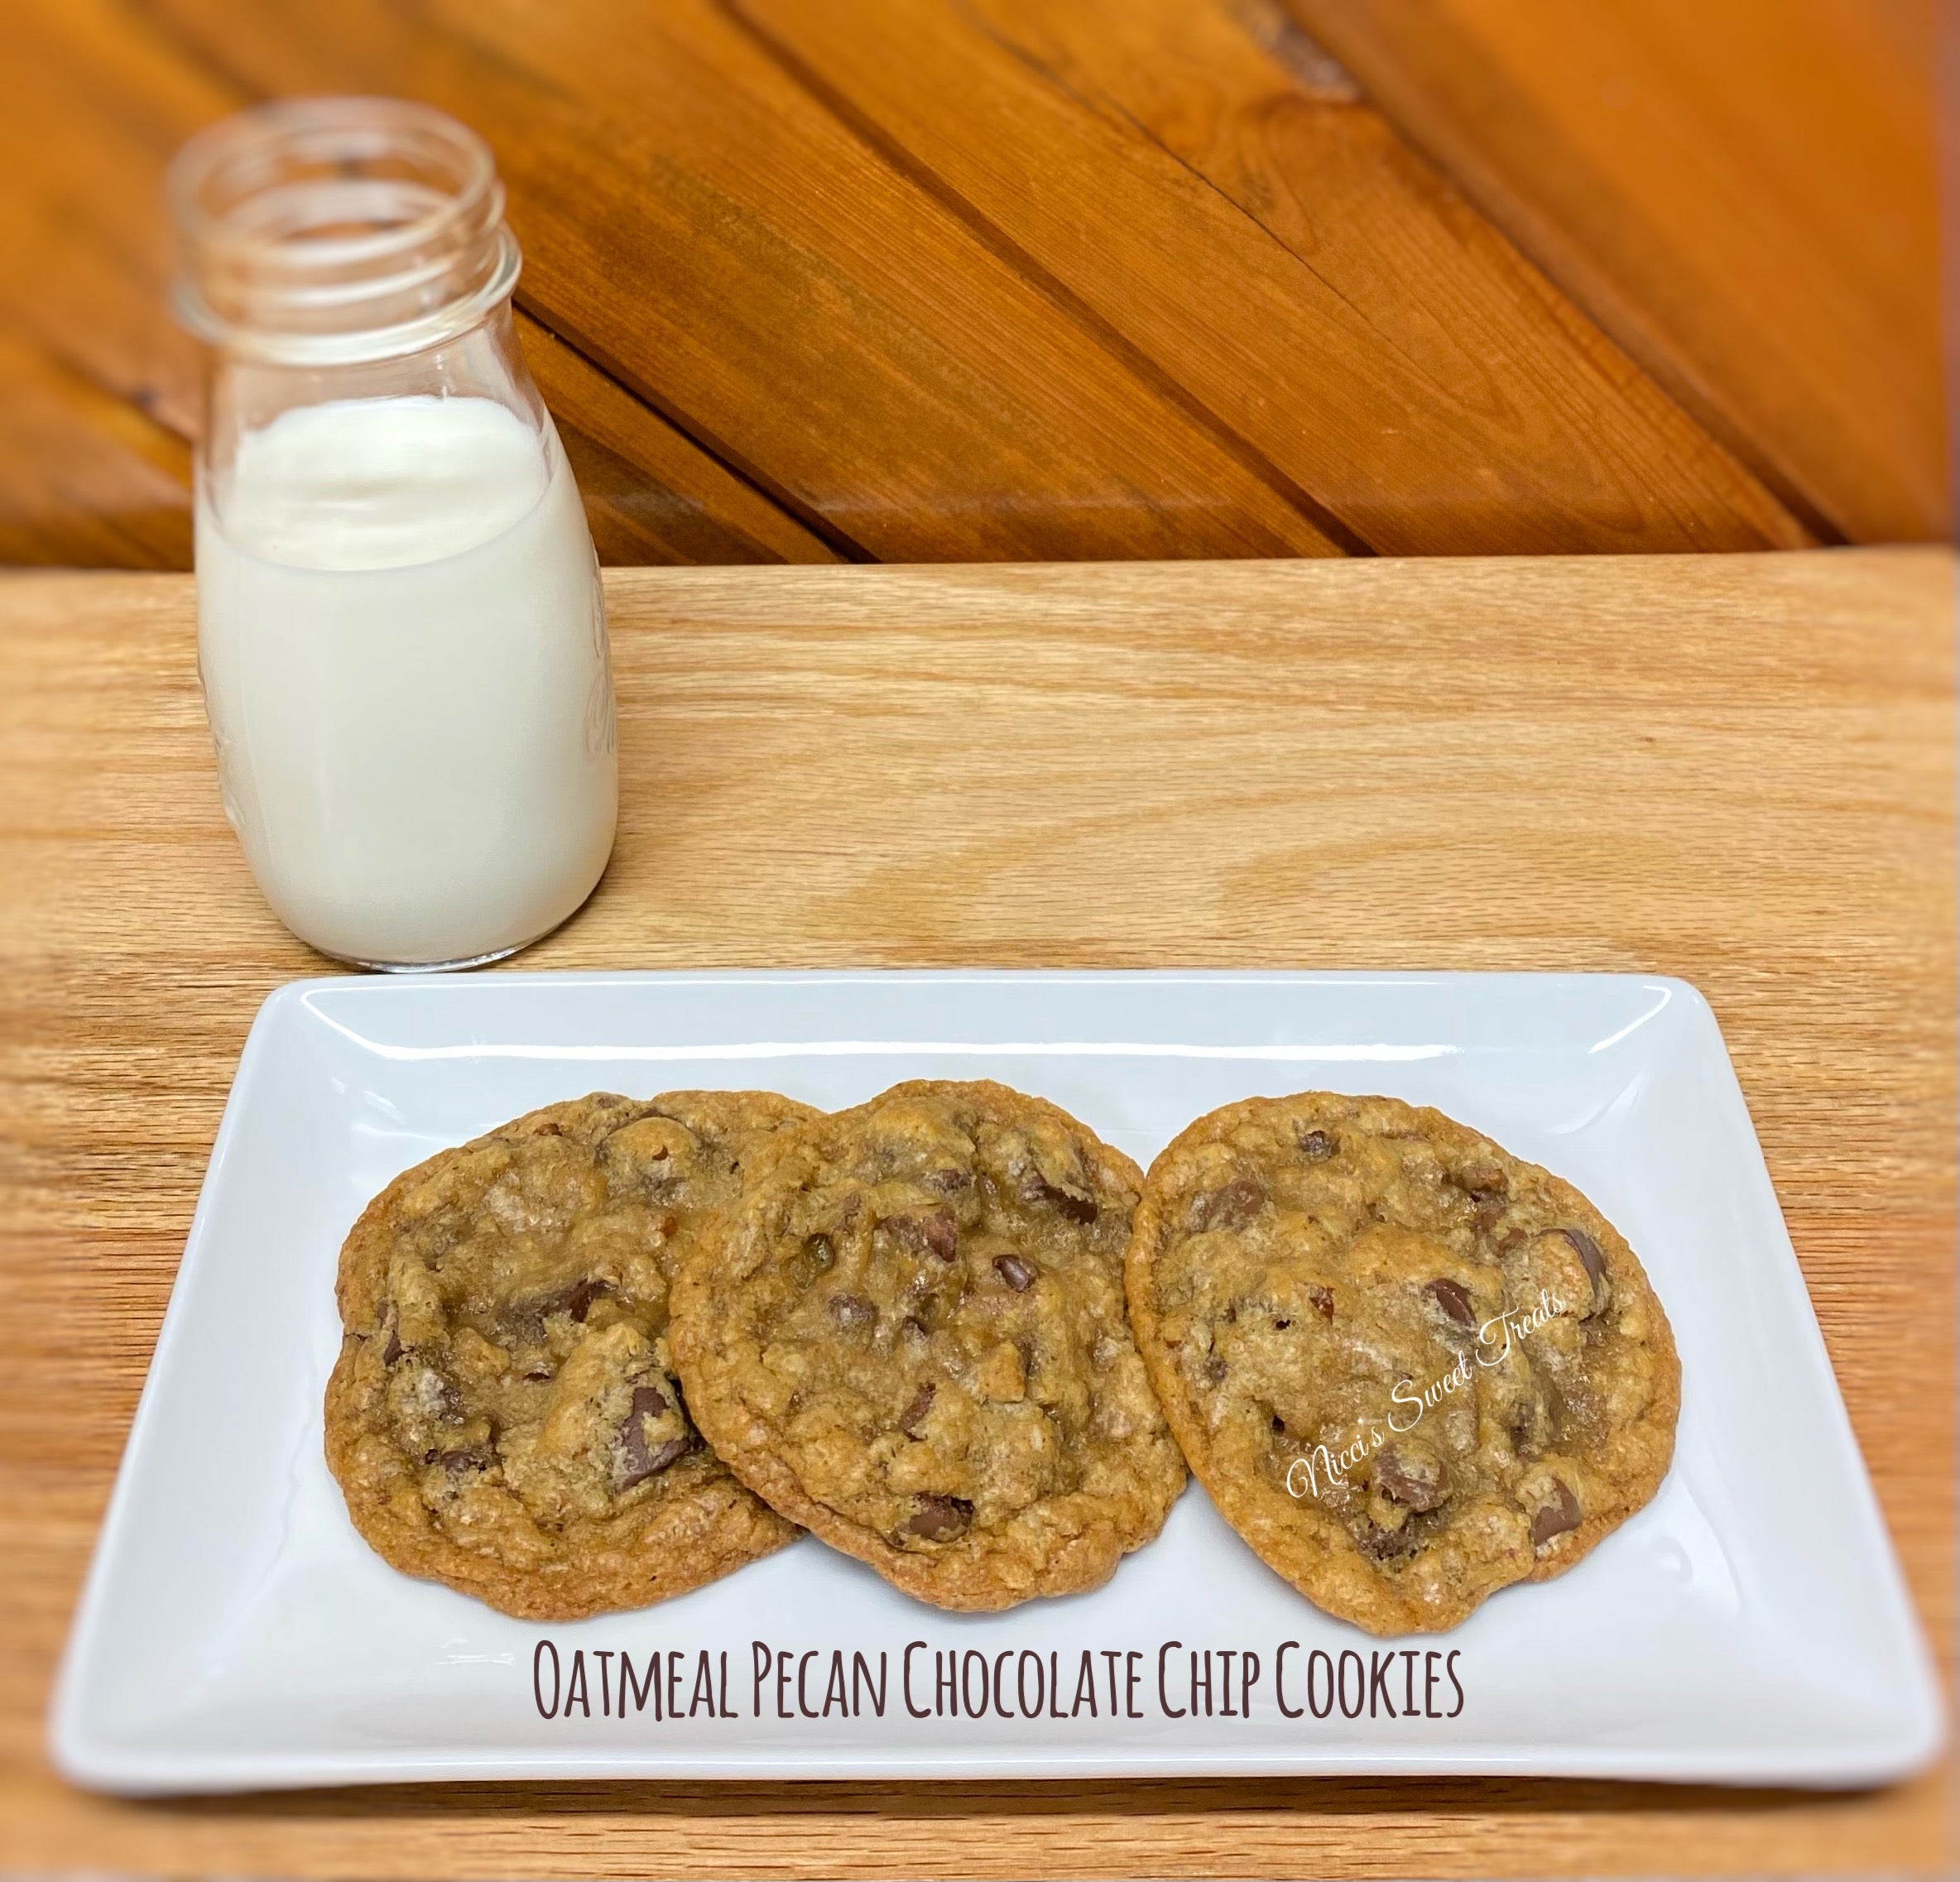 Gourmet Cookies